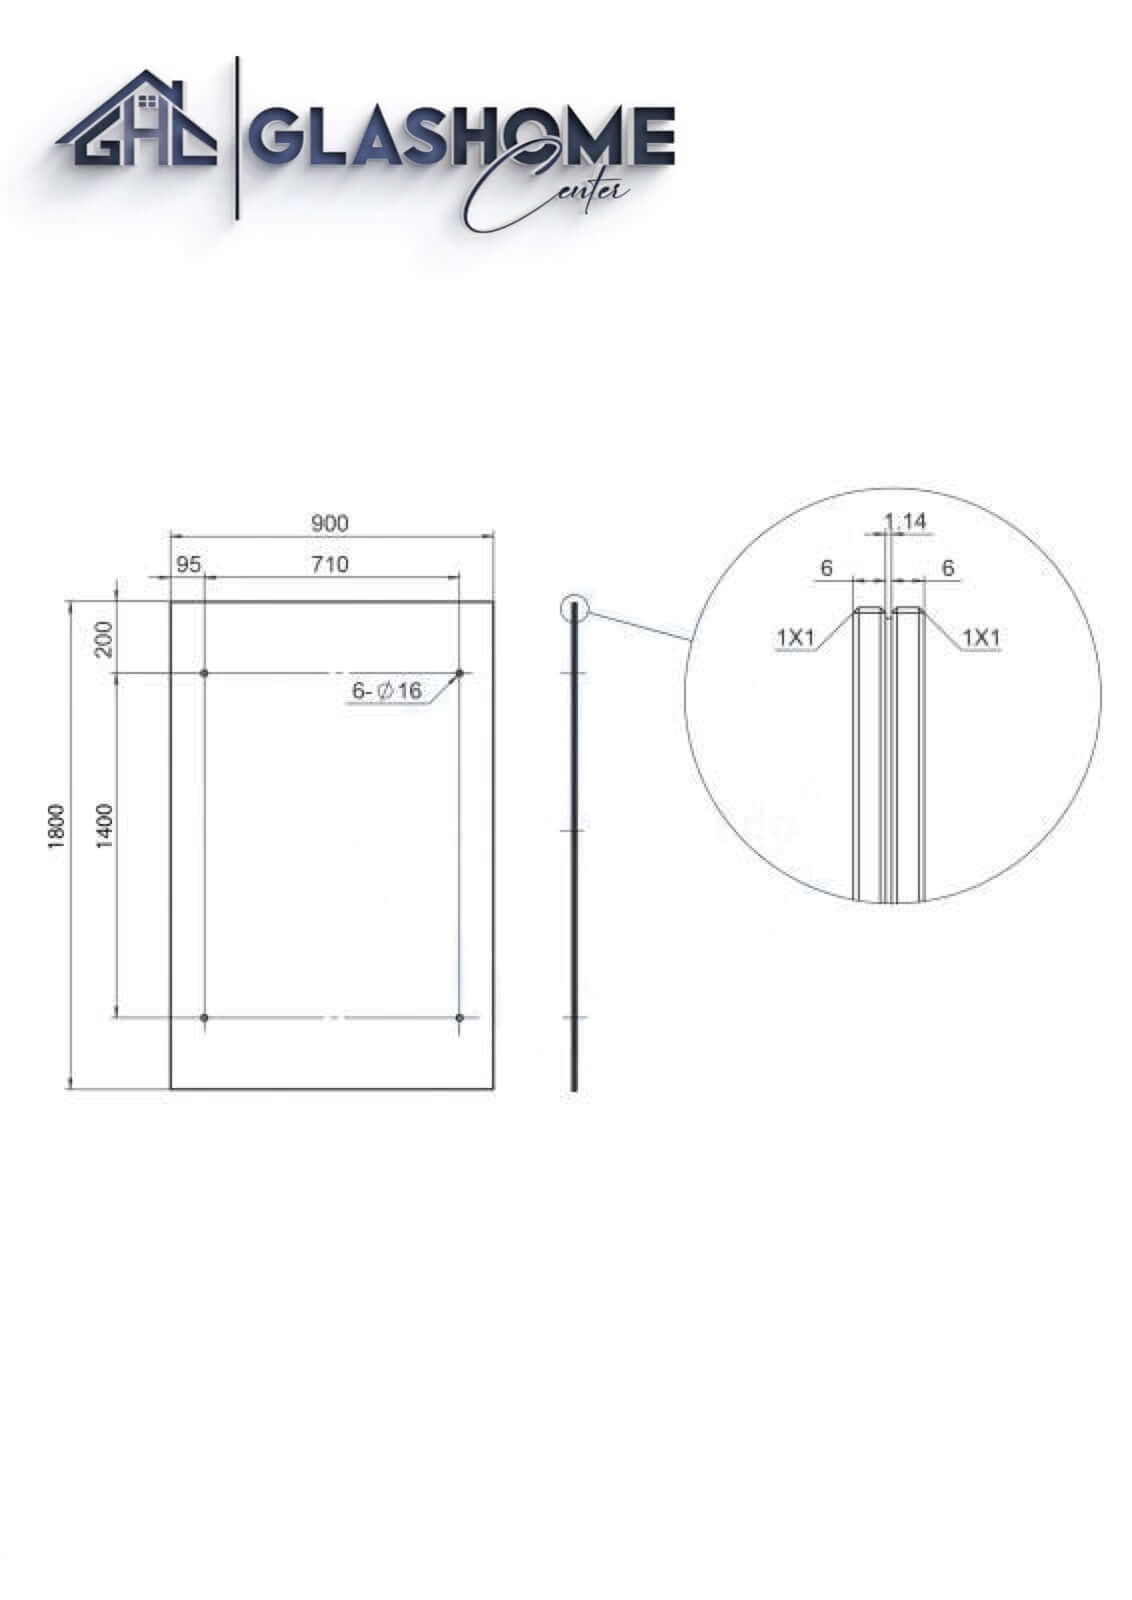 GlasHomeCenter - Glasvordach - Milchglas - 200x90cm - 13,1mm VSG - incl. 2 Edelstahlhalterungen variante "Rom"